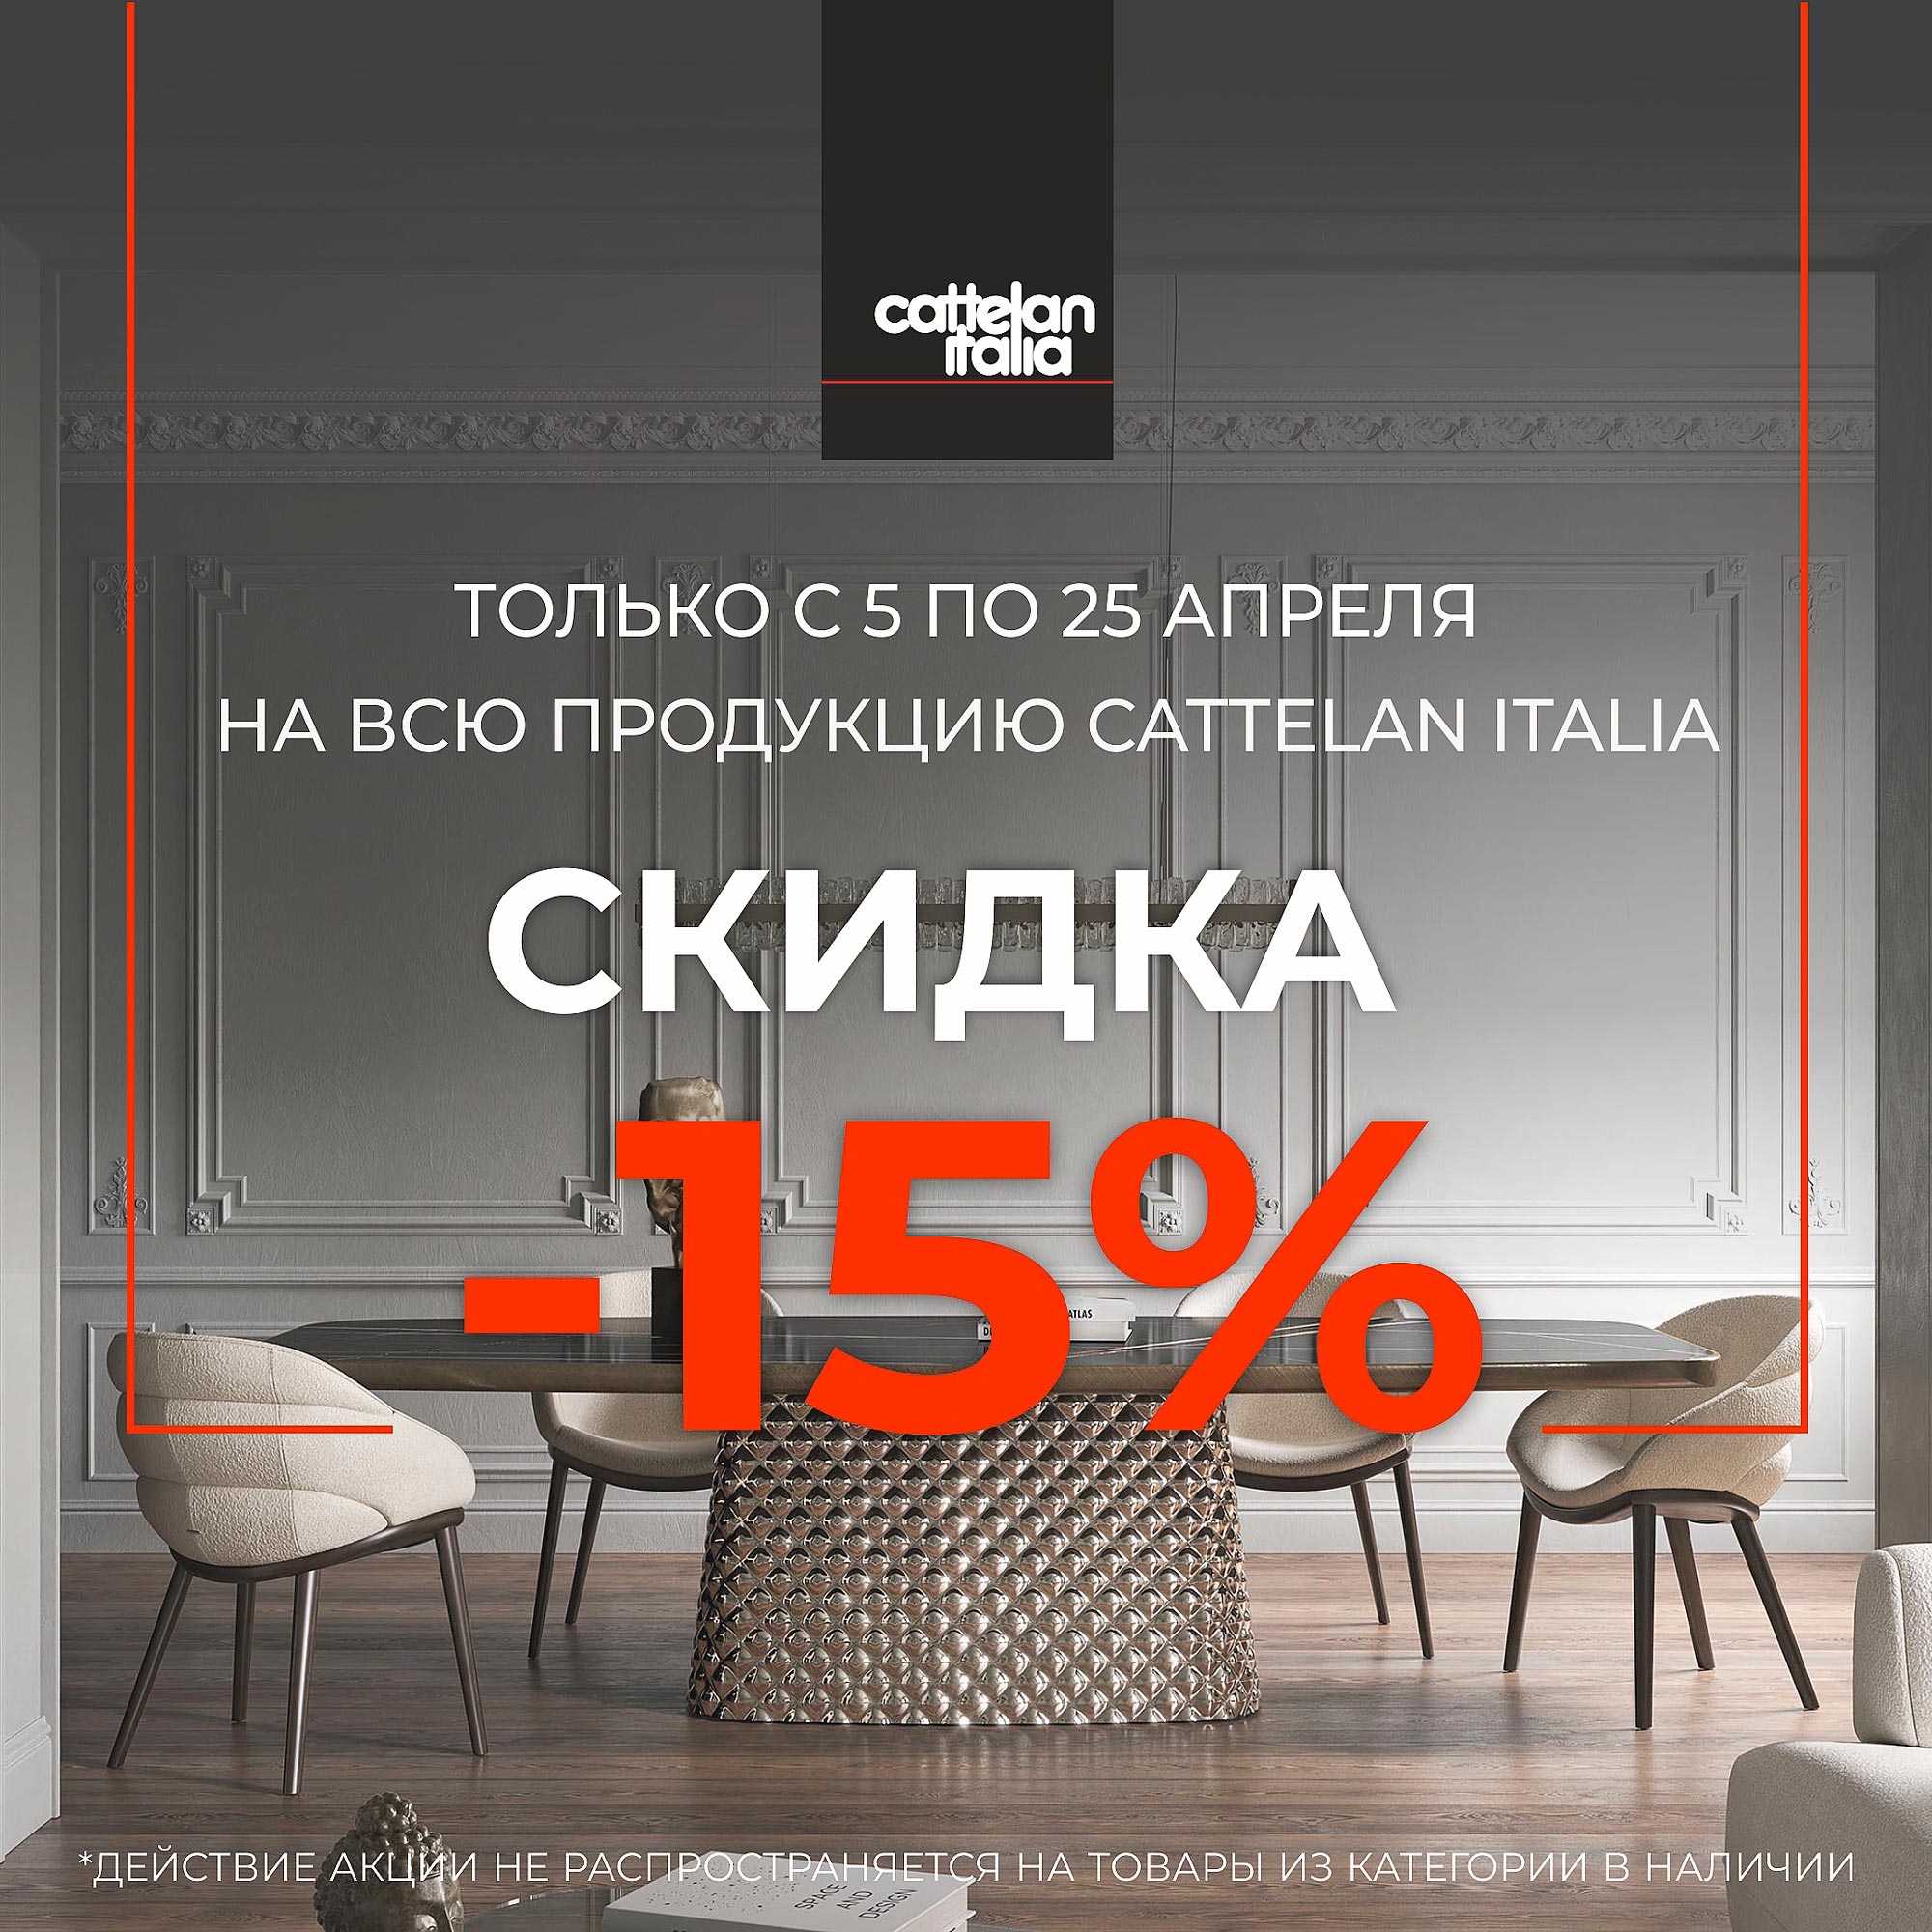 Распродажа мебели Cattelan Italia